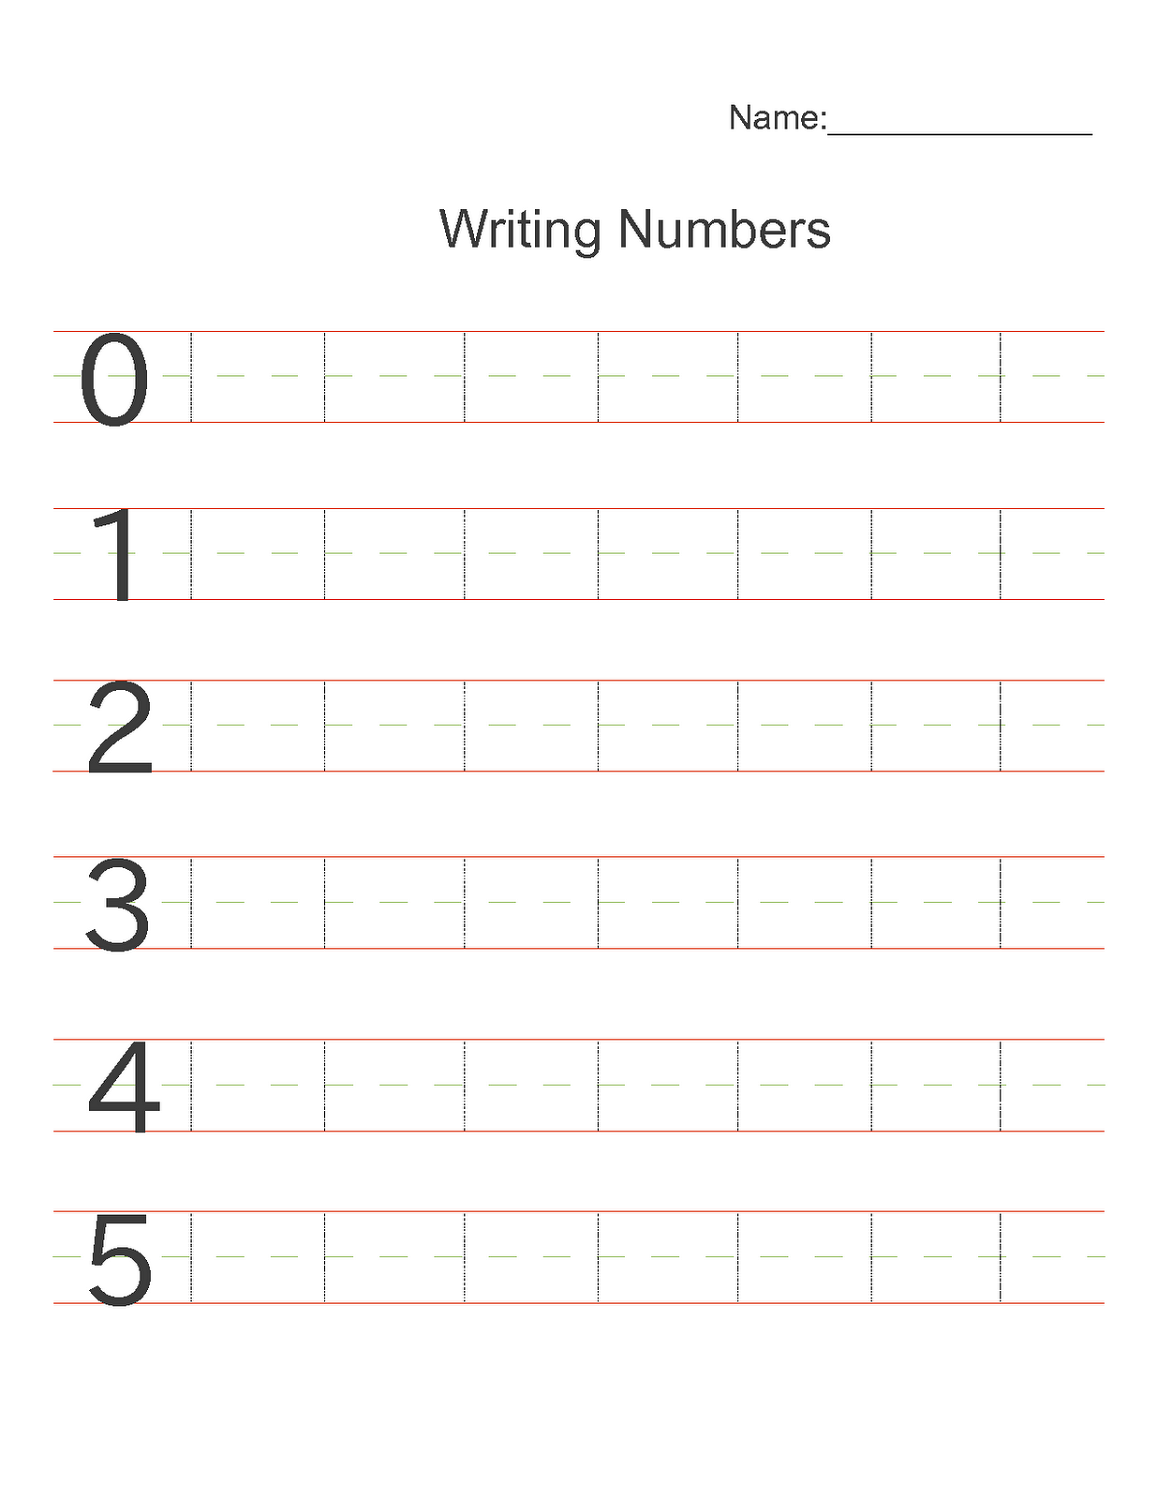 Writing Numbers Practice Worksheet